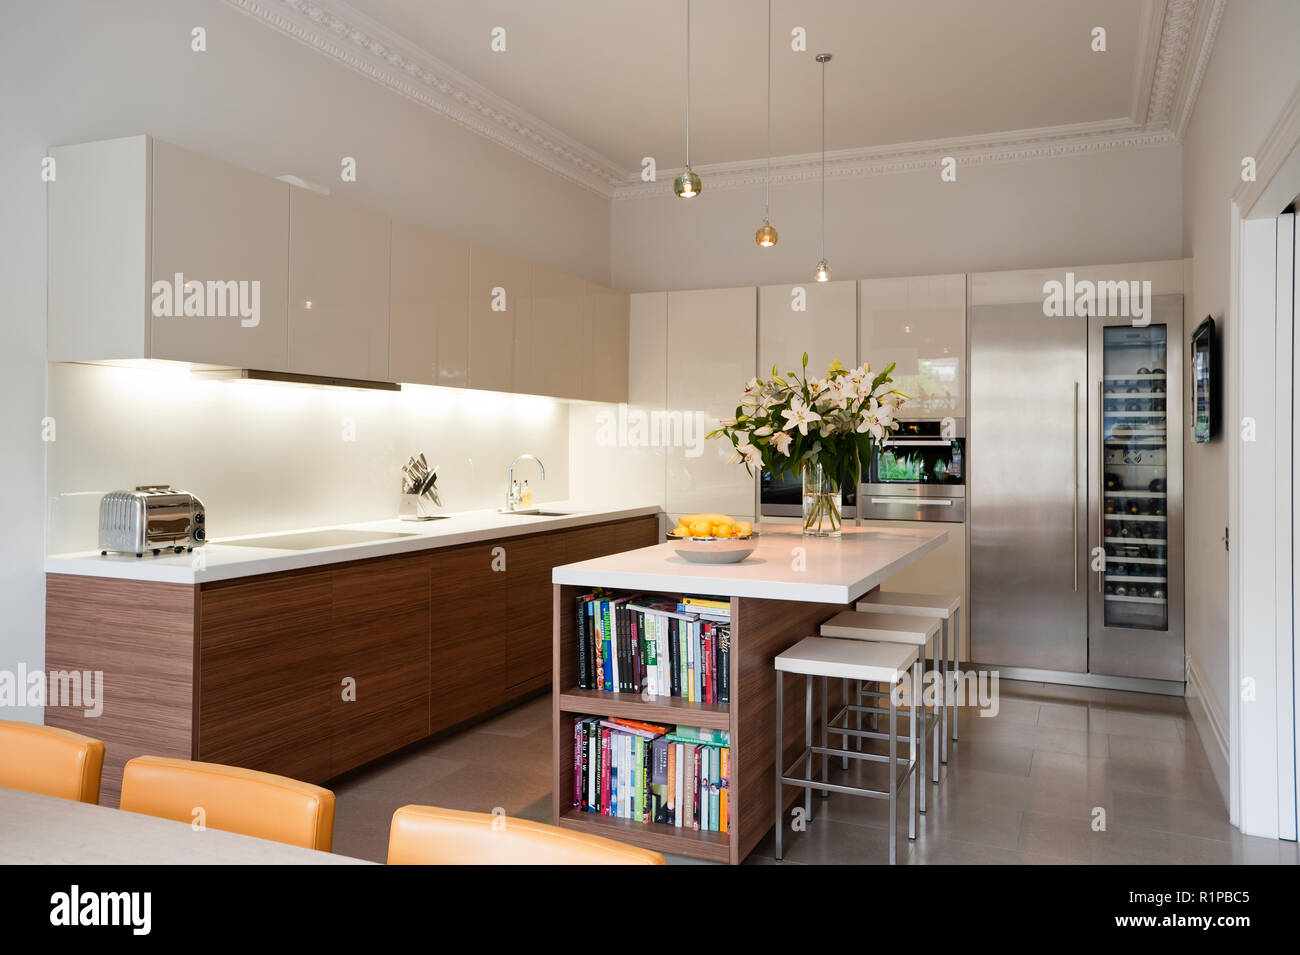 Modern kitchen with flower arrangement Stock Photo